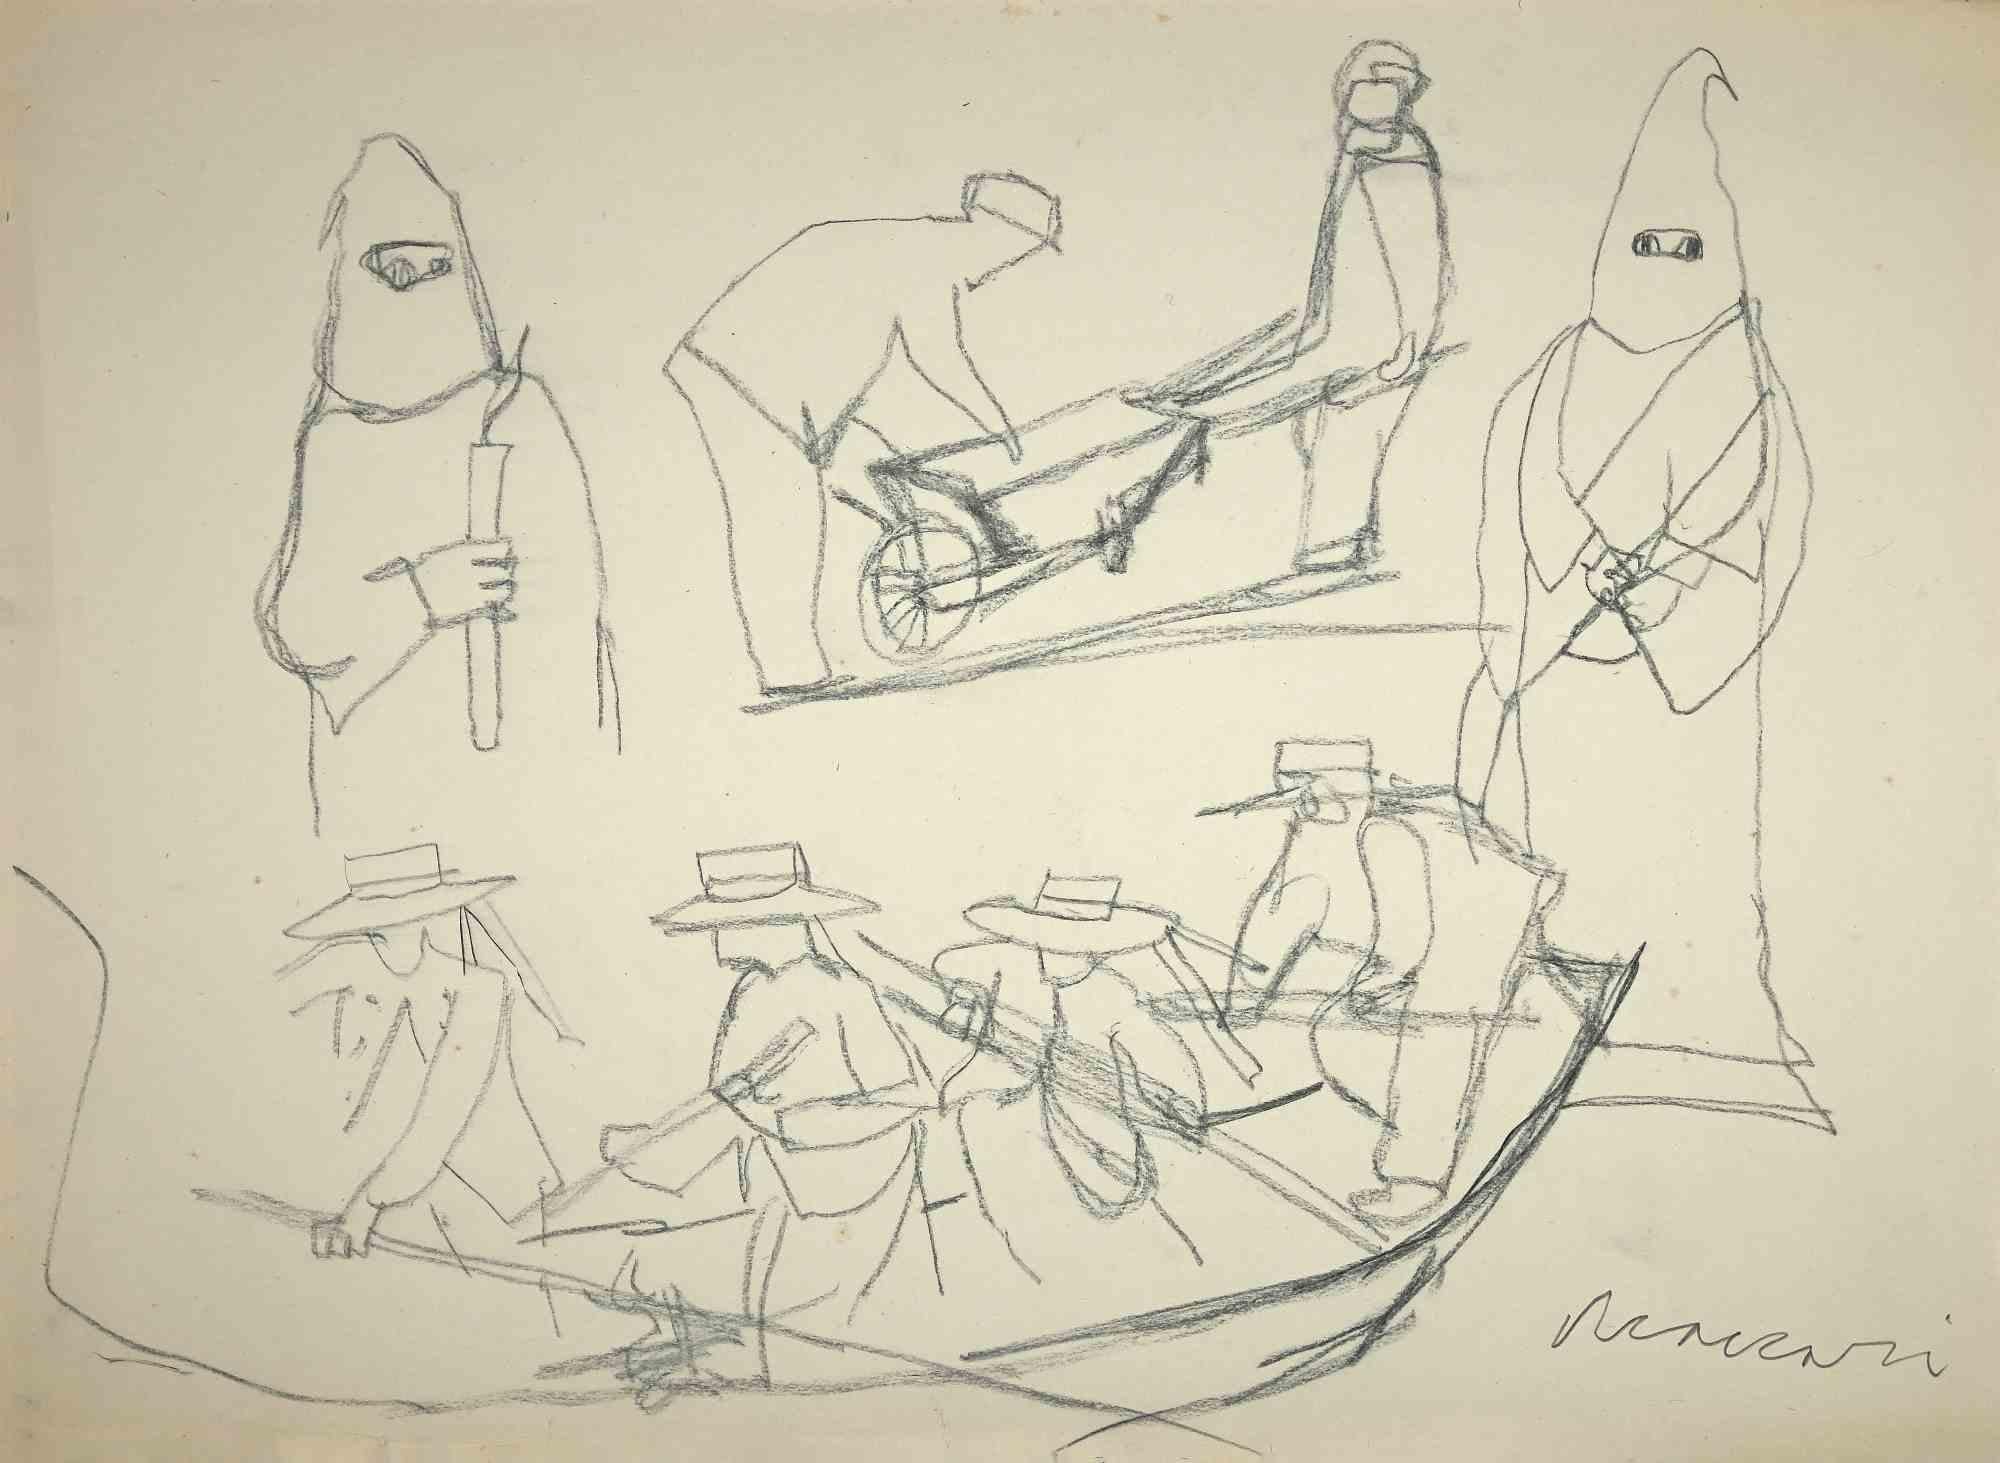 Die Flucht ist eine Originalzeichnung auf cremefarbenem Papier von Mino Maccari aus der Mitte des 20. Jahrhunderts.

Handsigniert vom Künstler auf der Unterseite.

Guter Zustand mit einigen kleinen Schnitten und Falten an den Rändern.

Mino Maccari